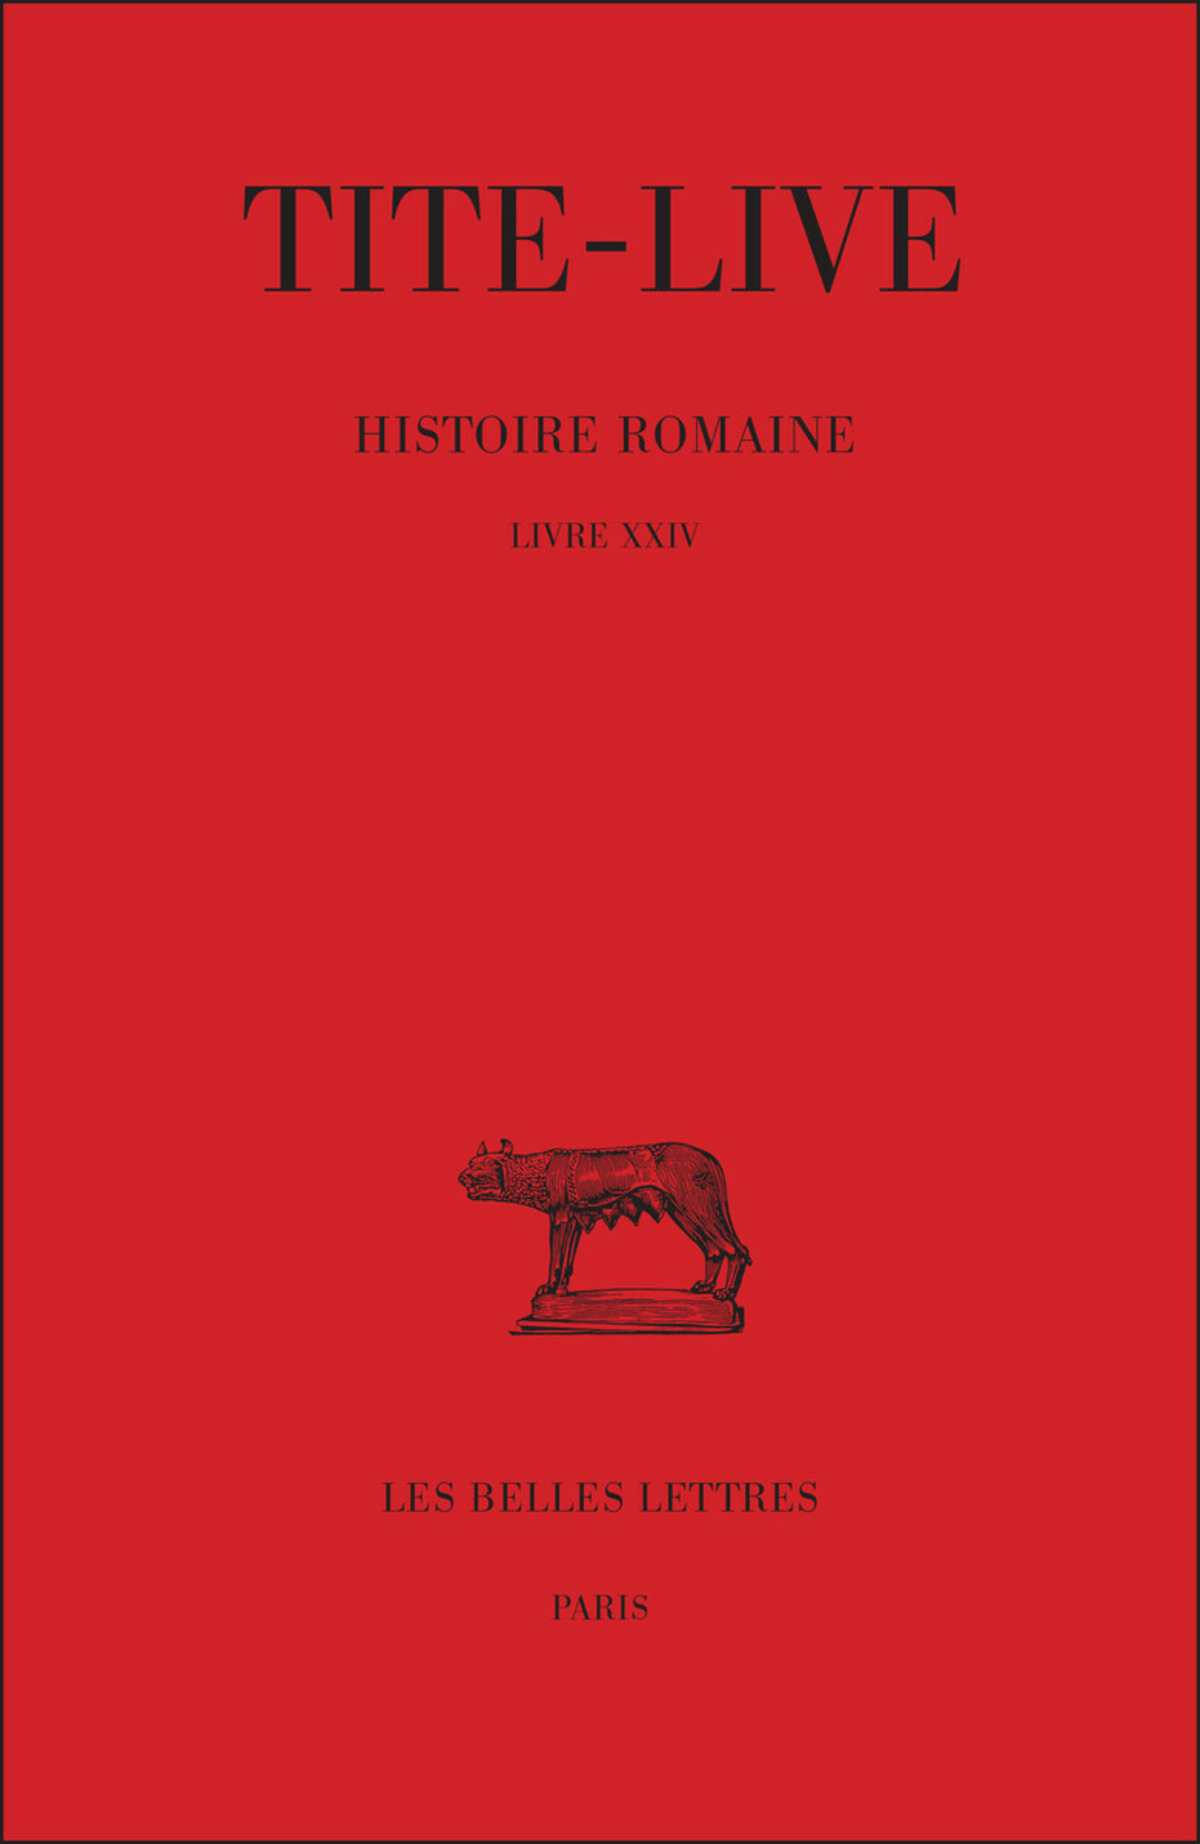 Histoire romaine. Tome XIV : Livre XXIV